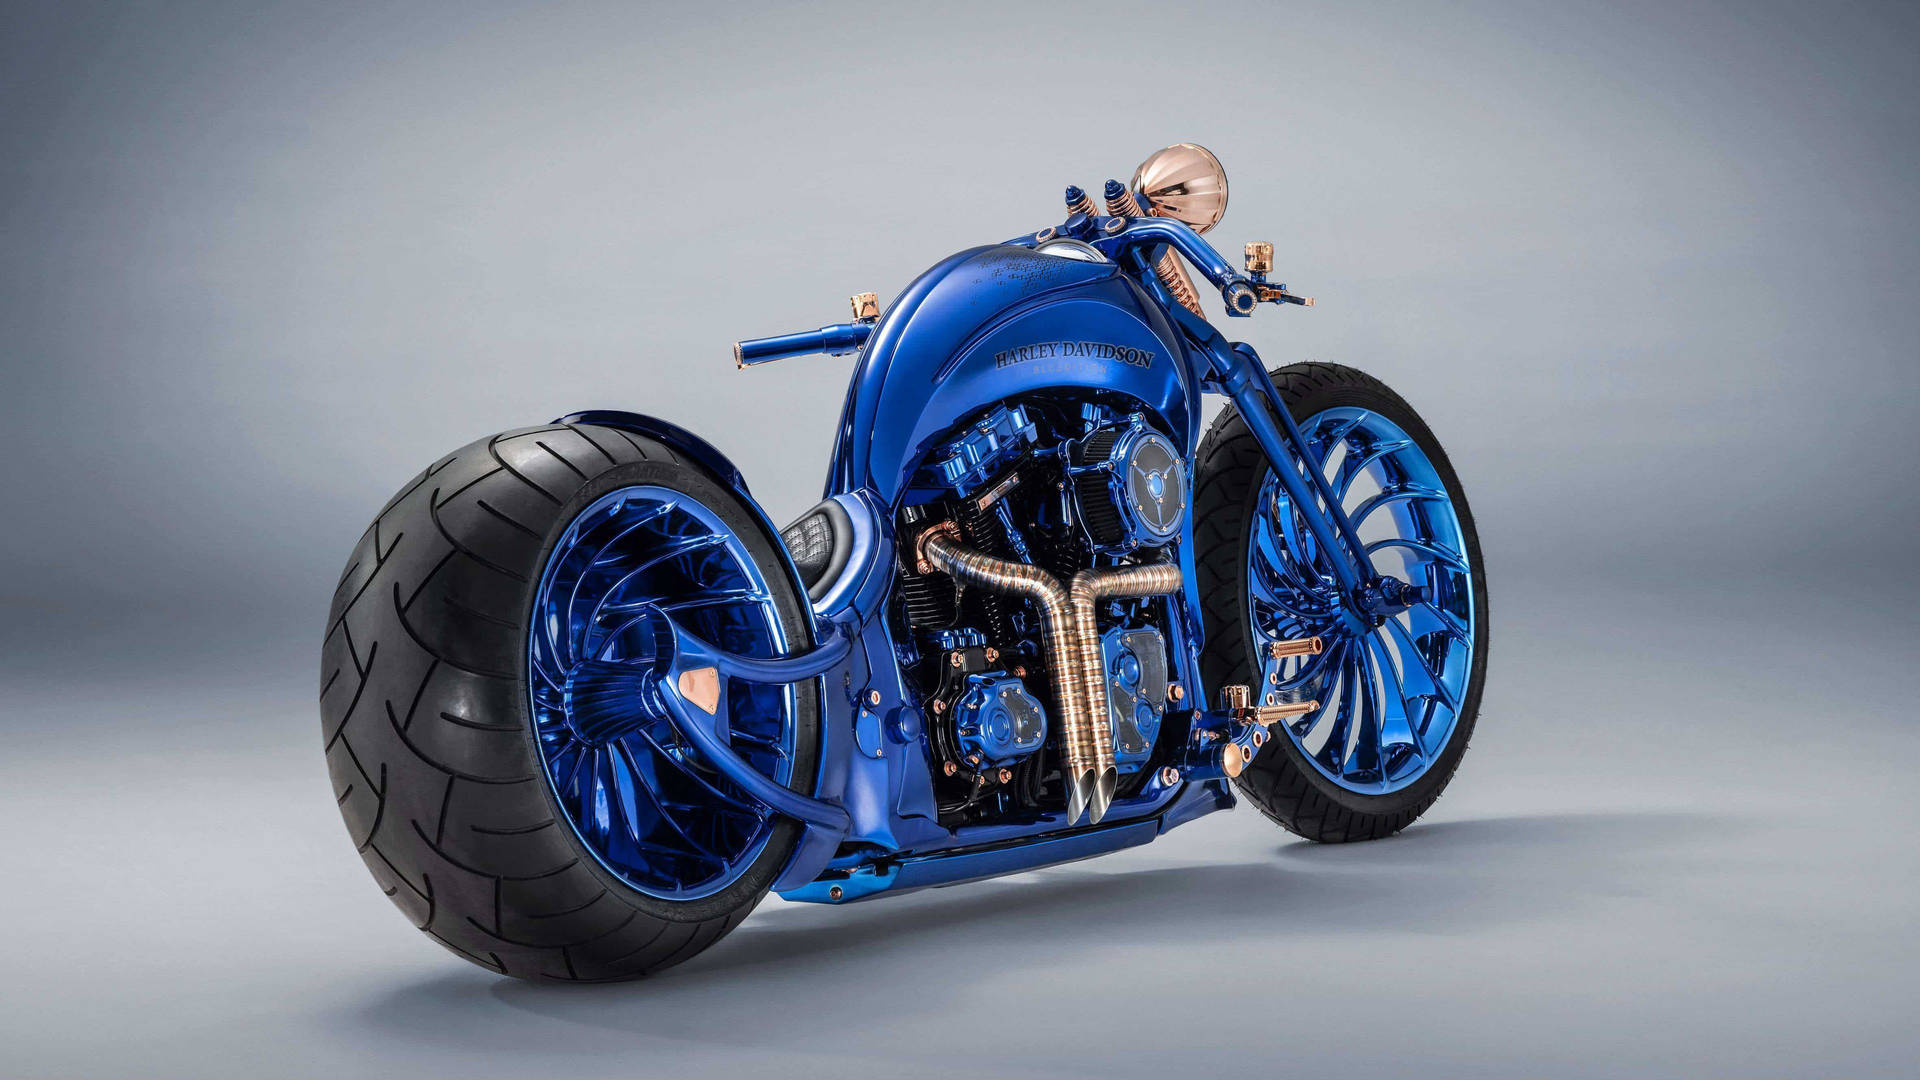 Motocicletapequeña Azul De Fácil Conducción Fondo de pantalla